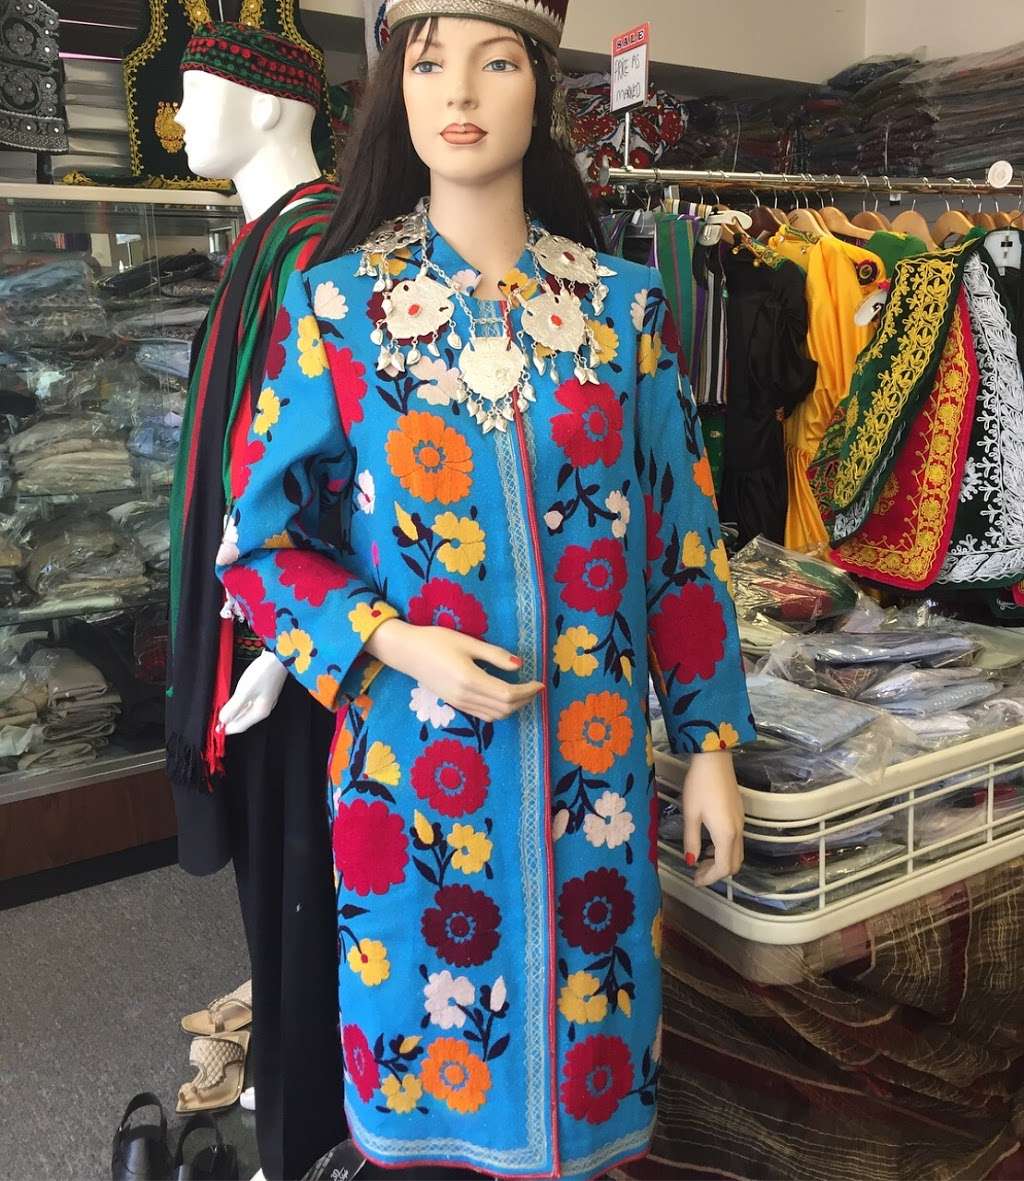 Afghan Bazaar | 37422 Fremont Blvd # A, Fremont, CA 94536 | Phone: (510) 791-8447